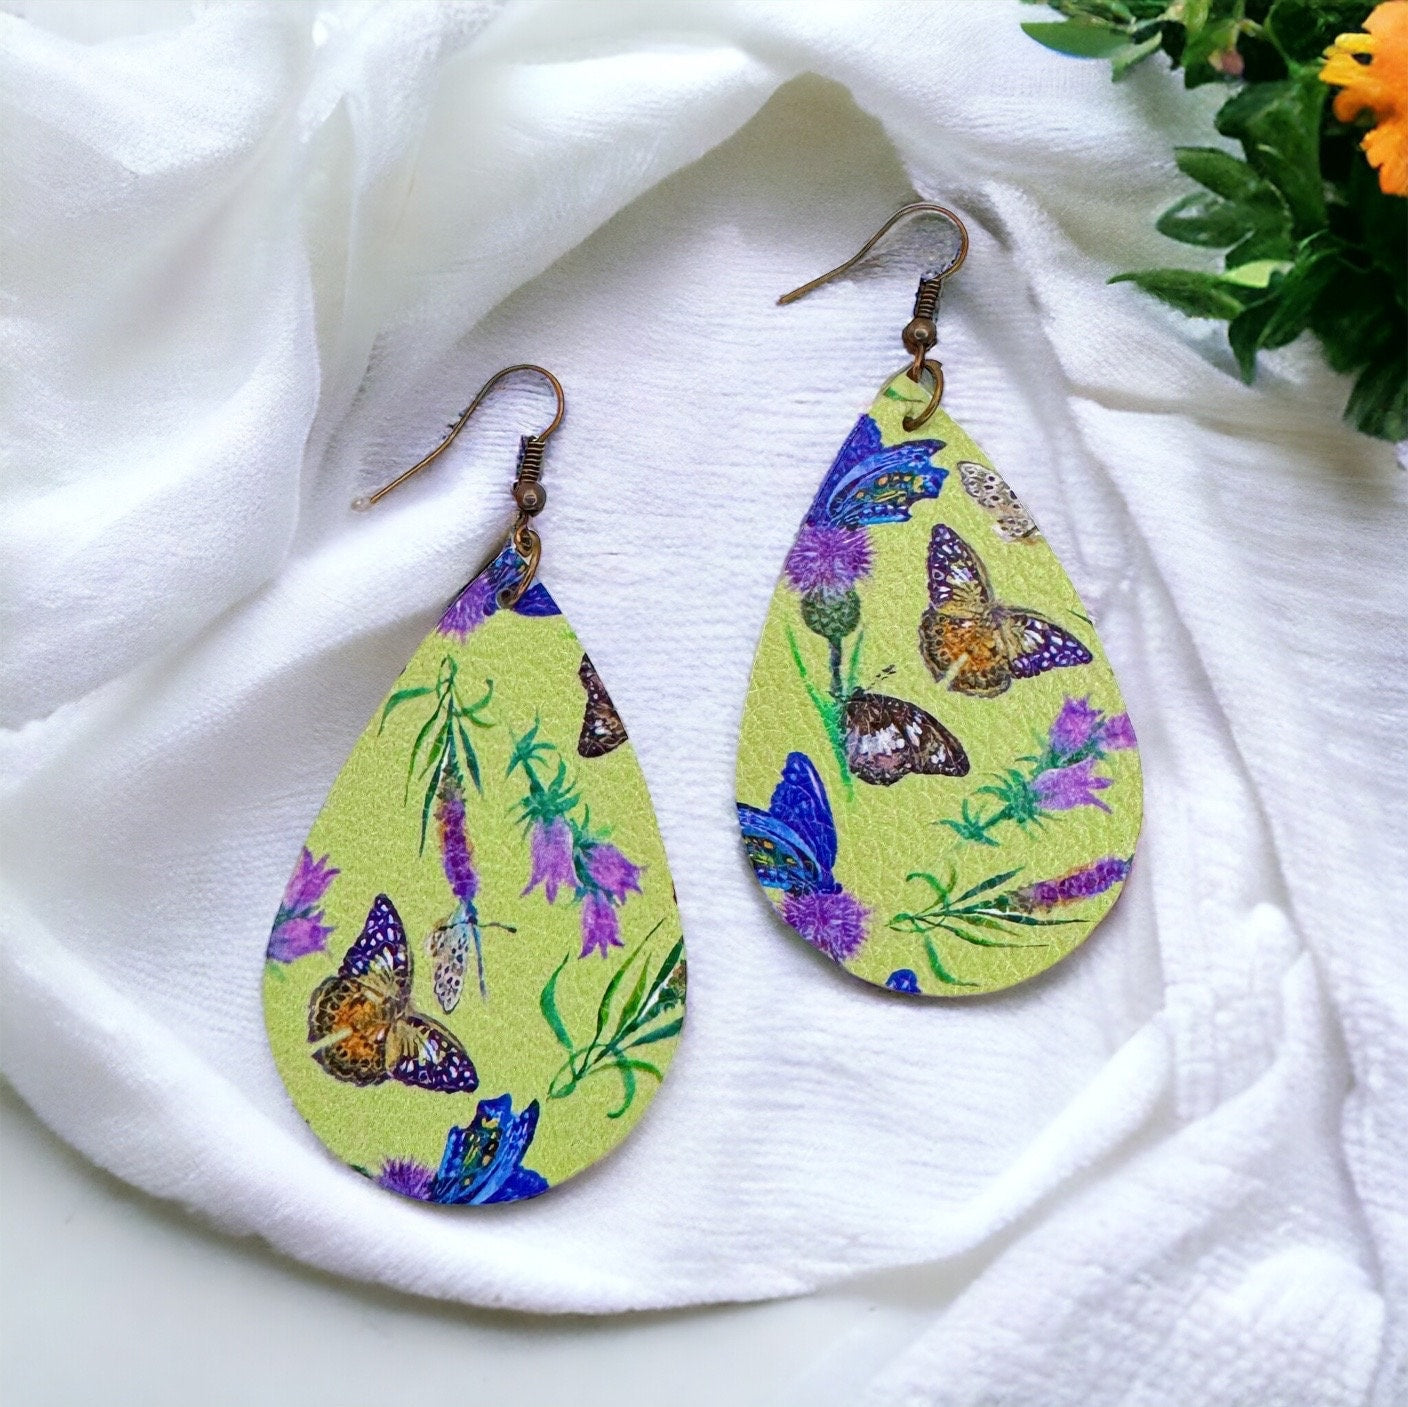 Butterfly Earrings - Easter Earrings, Handmade Earrings, Butterfly Jewelry, Butterfly Accessories, Floral Accessories, Easter Accessories